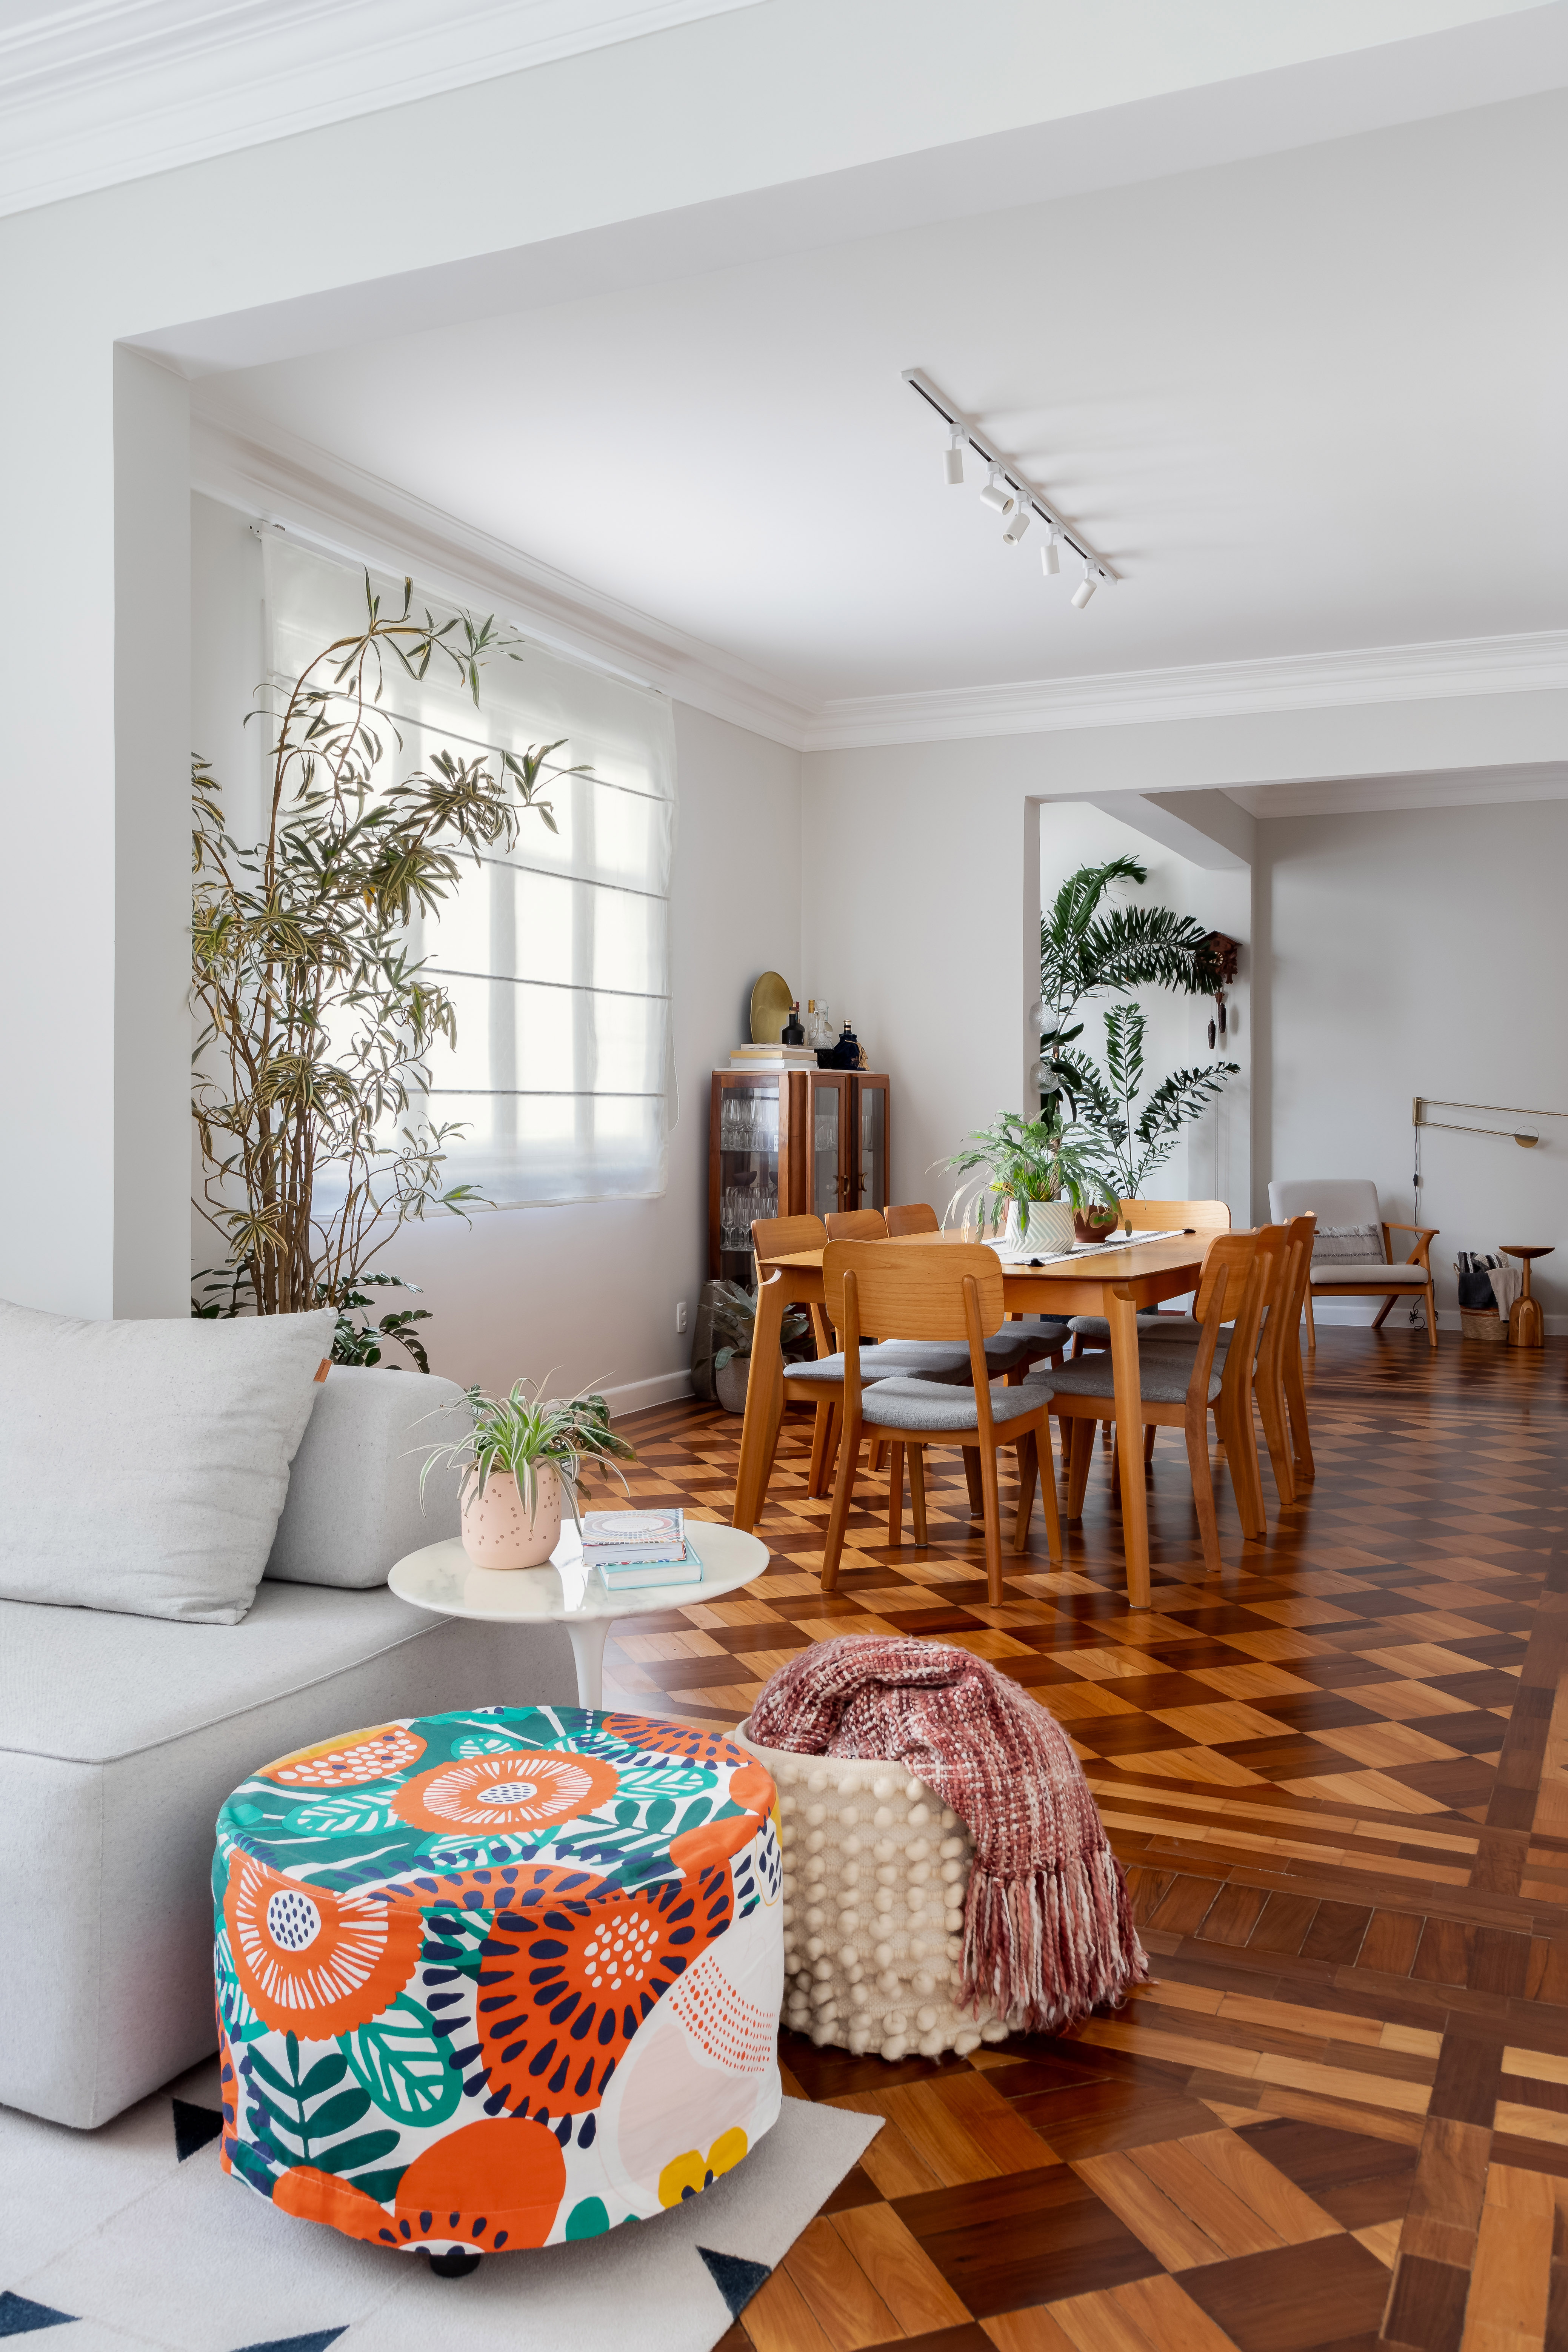 Piso de taco, janelas brancas e sancas dão charme parisiense a este apê. Projeto de Ana Paula Crivelenti. Na foto, sala de estar, pufe colorido, sofá cinza claro.